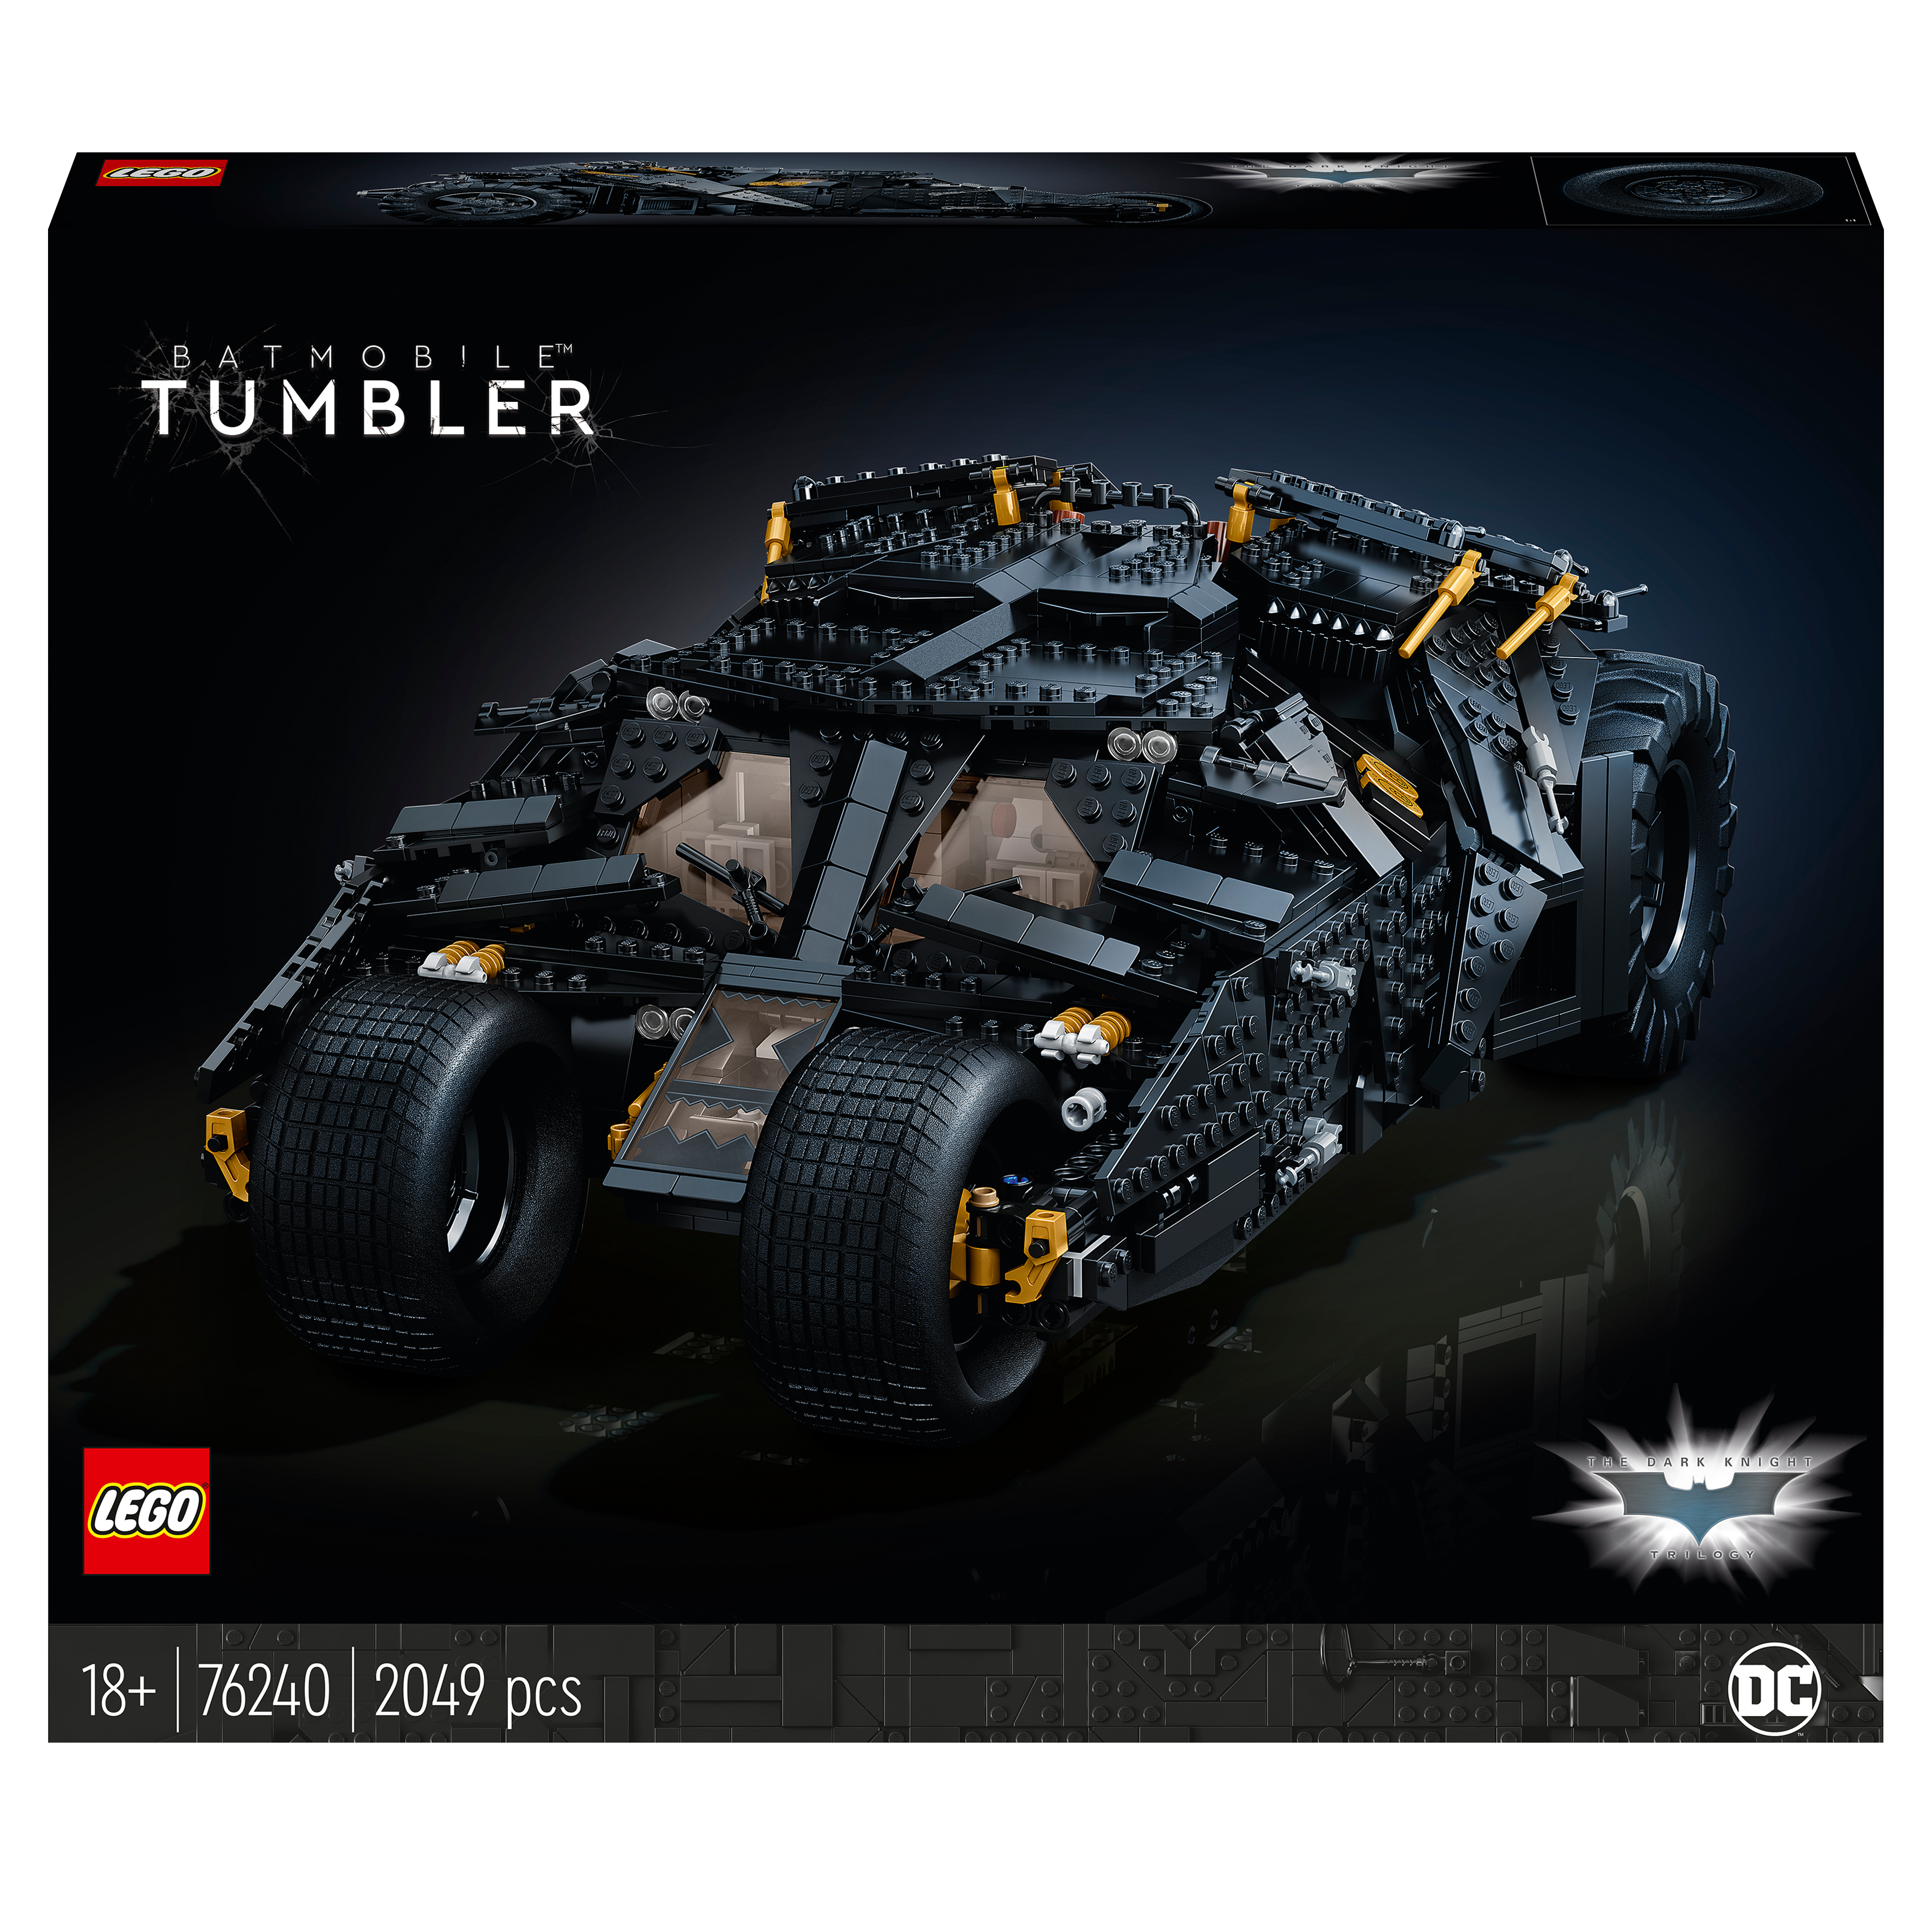 Batmobile Tumbler